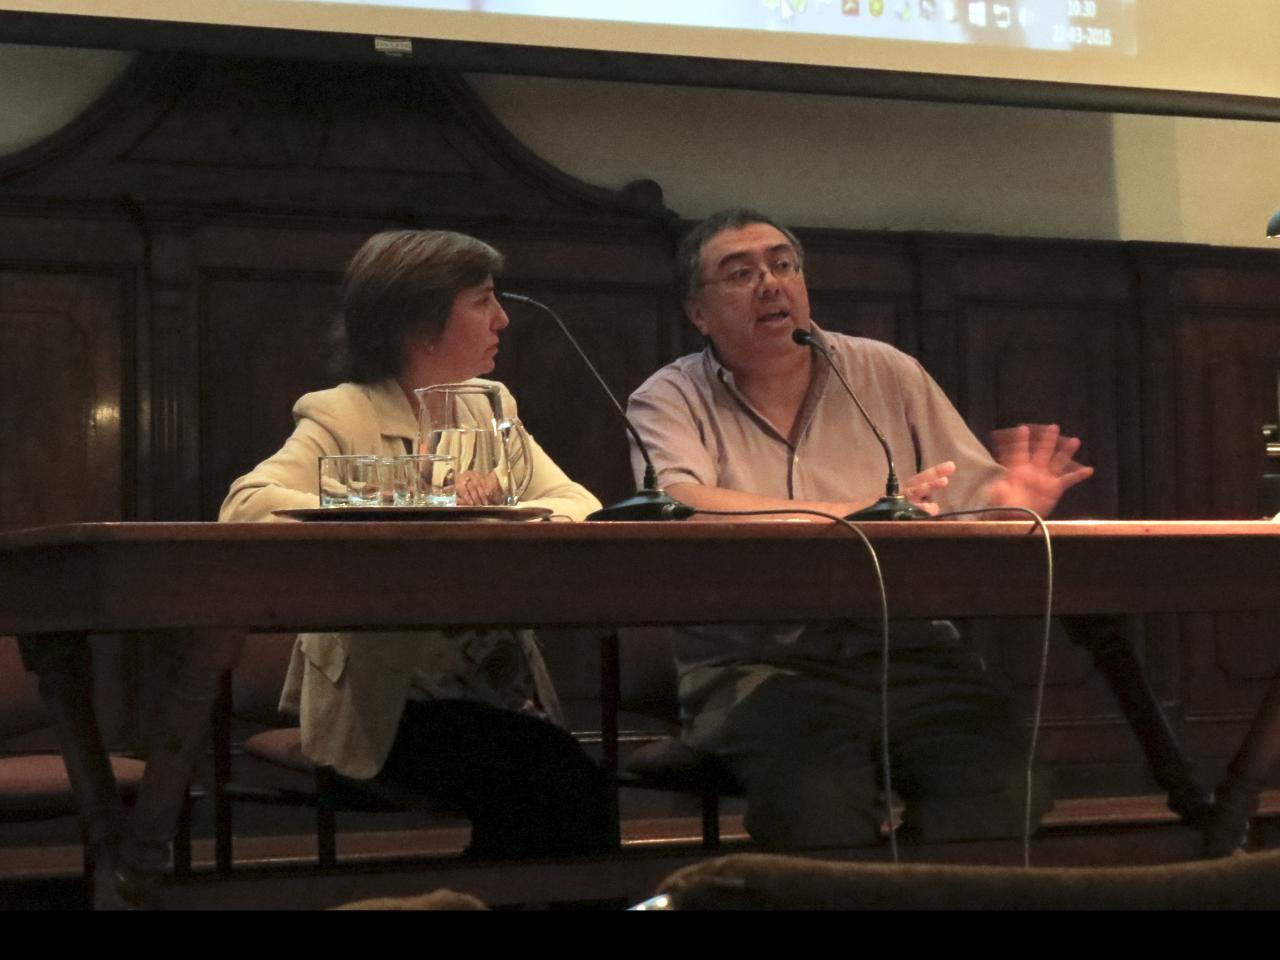 Ángela Benavente, Conservadora, y Juan Manuel Martínez, Historiador, Laboratorio de Pintura CNCR. (Reveco, G. 2016)